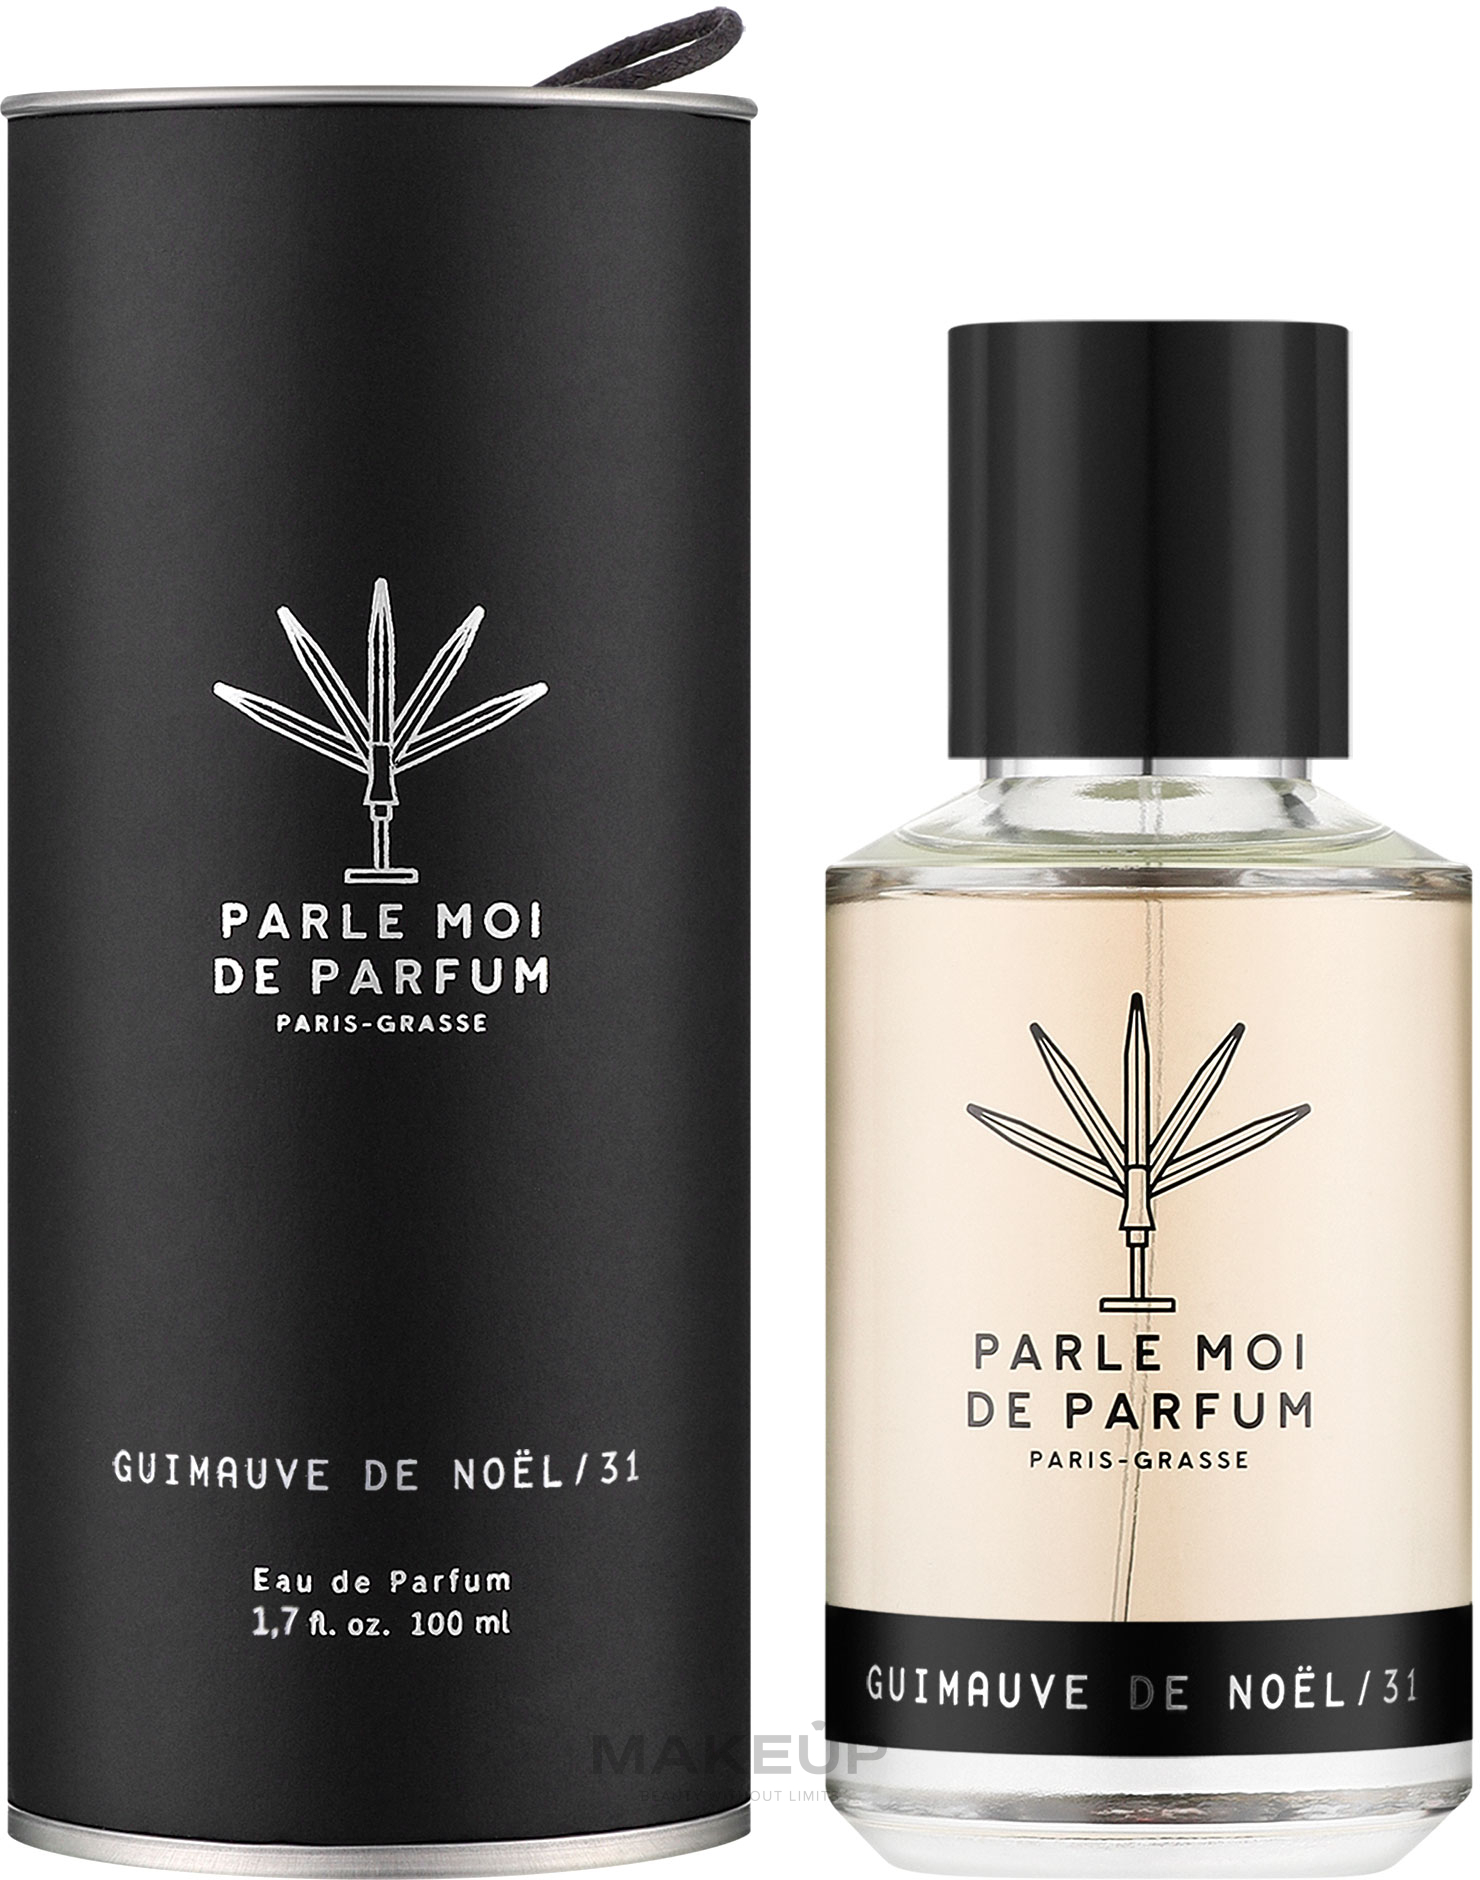 Parle Moi de Parfum Guimauve de Noel 31 - Парфюмированная вода — фото 50ml